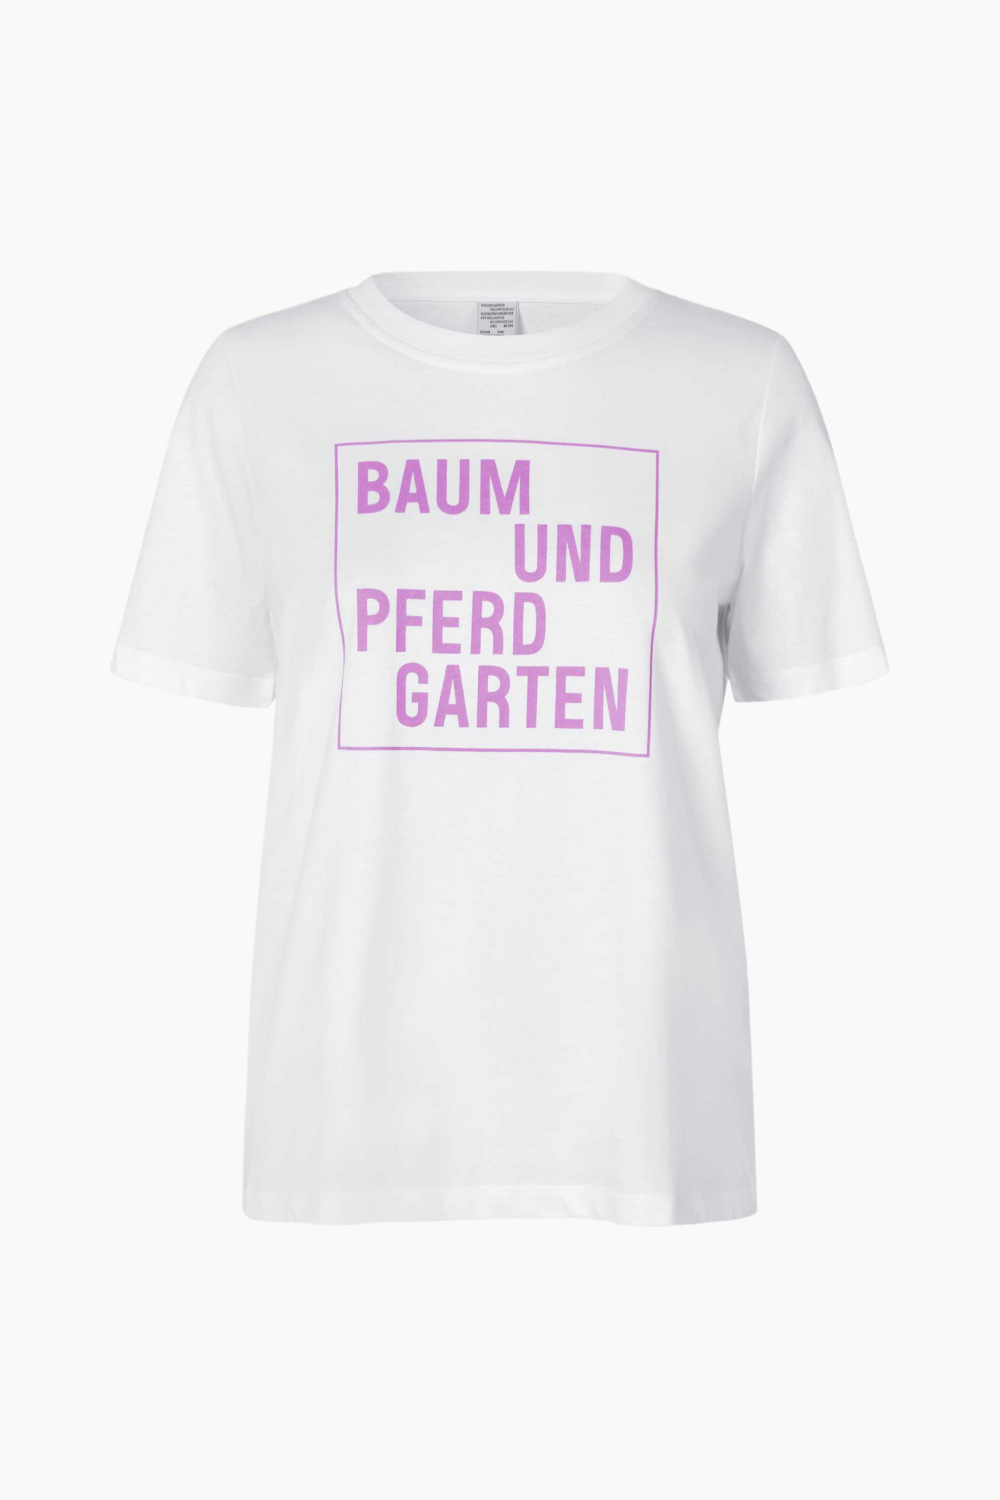 Se Jawo T-Shirt - Orchid Logo Box - Baum und Pferdgarten - Hvid S hos QNTS.dk